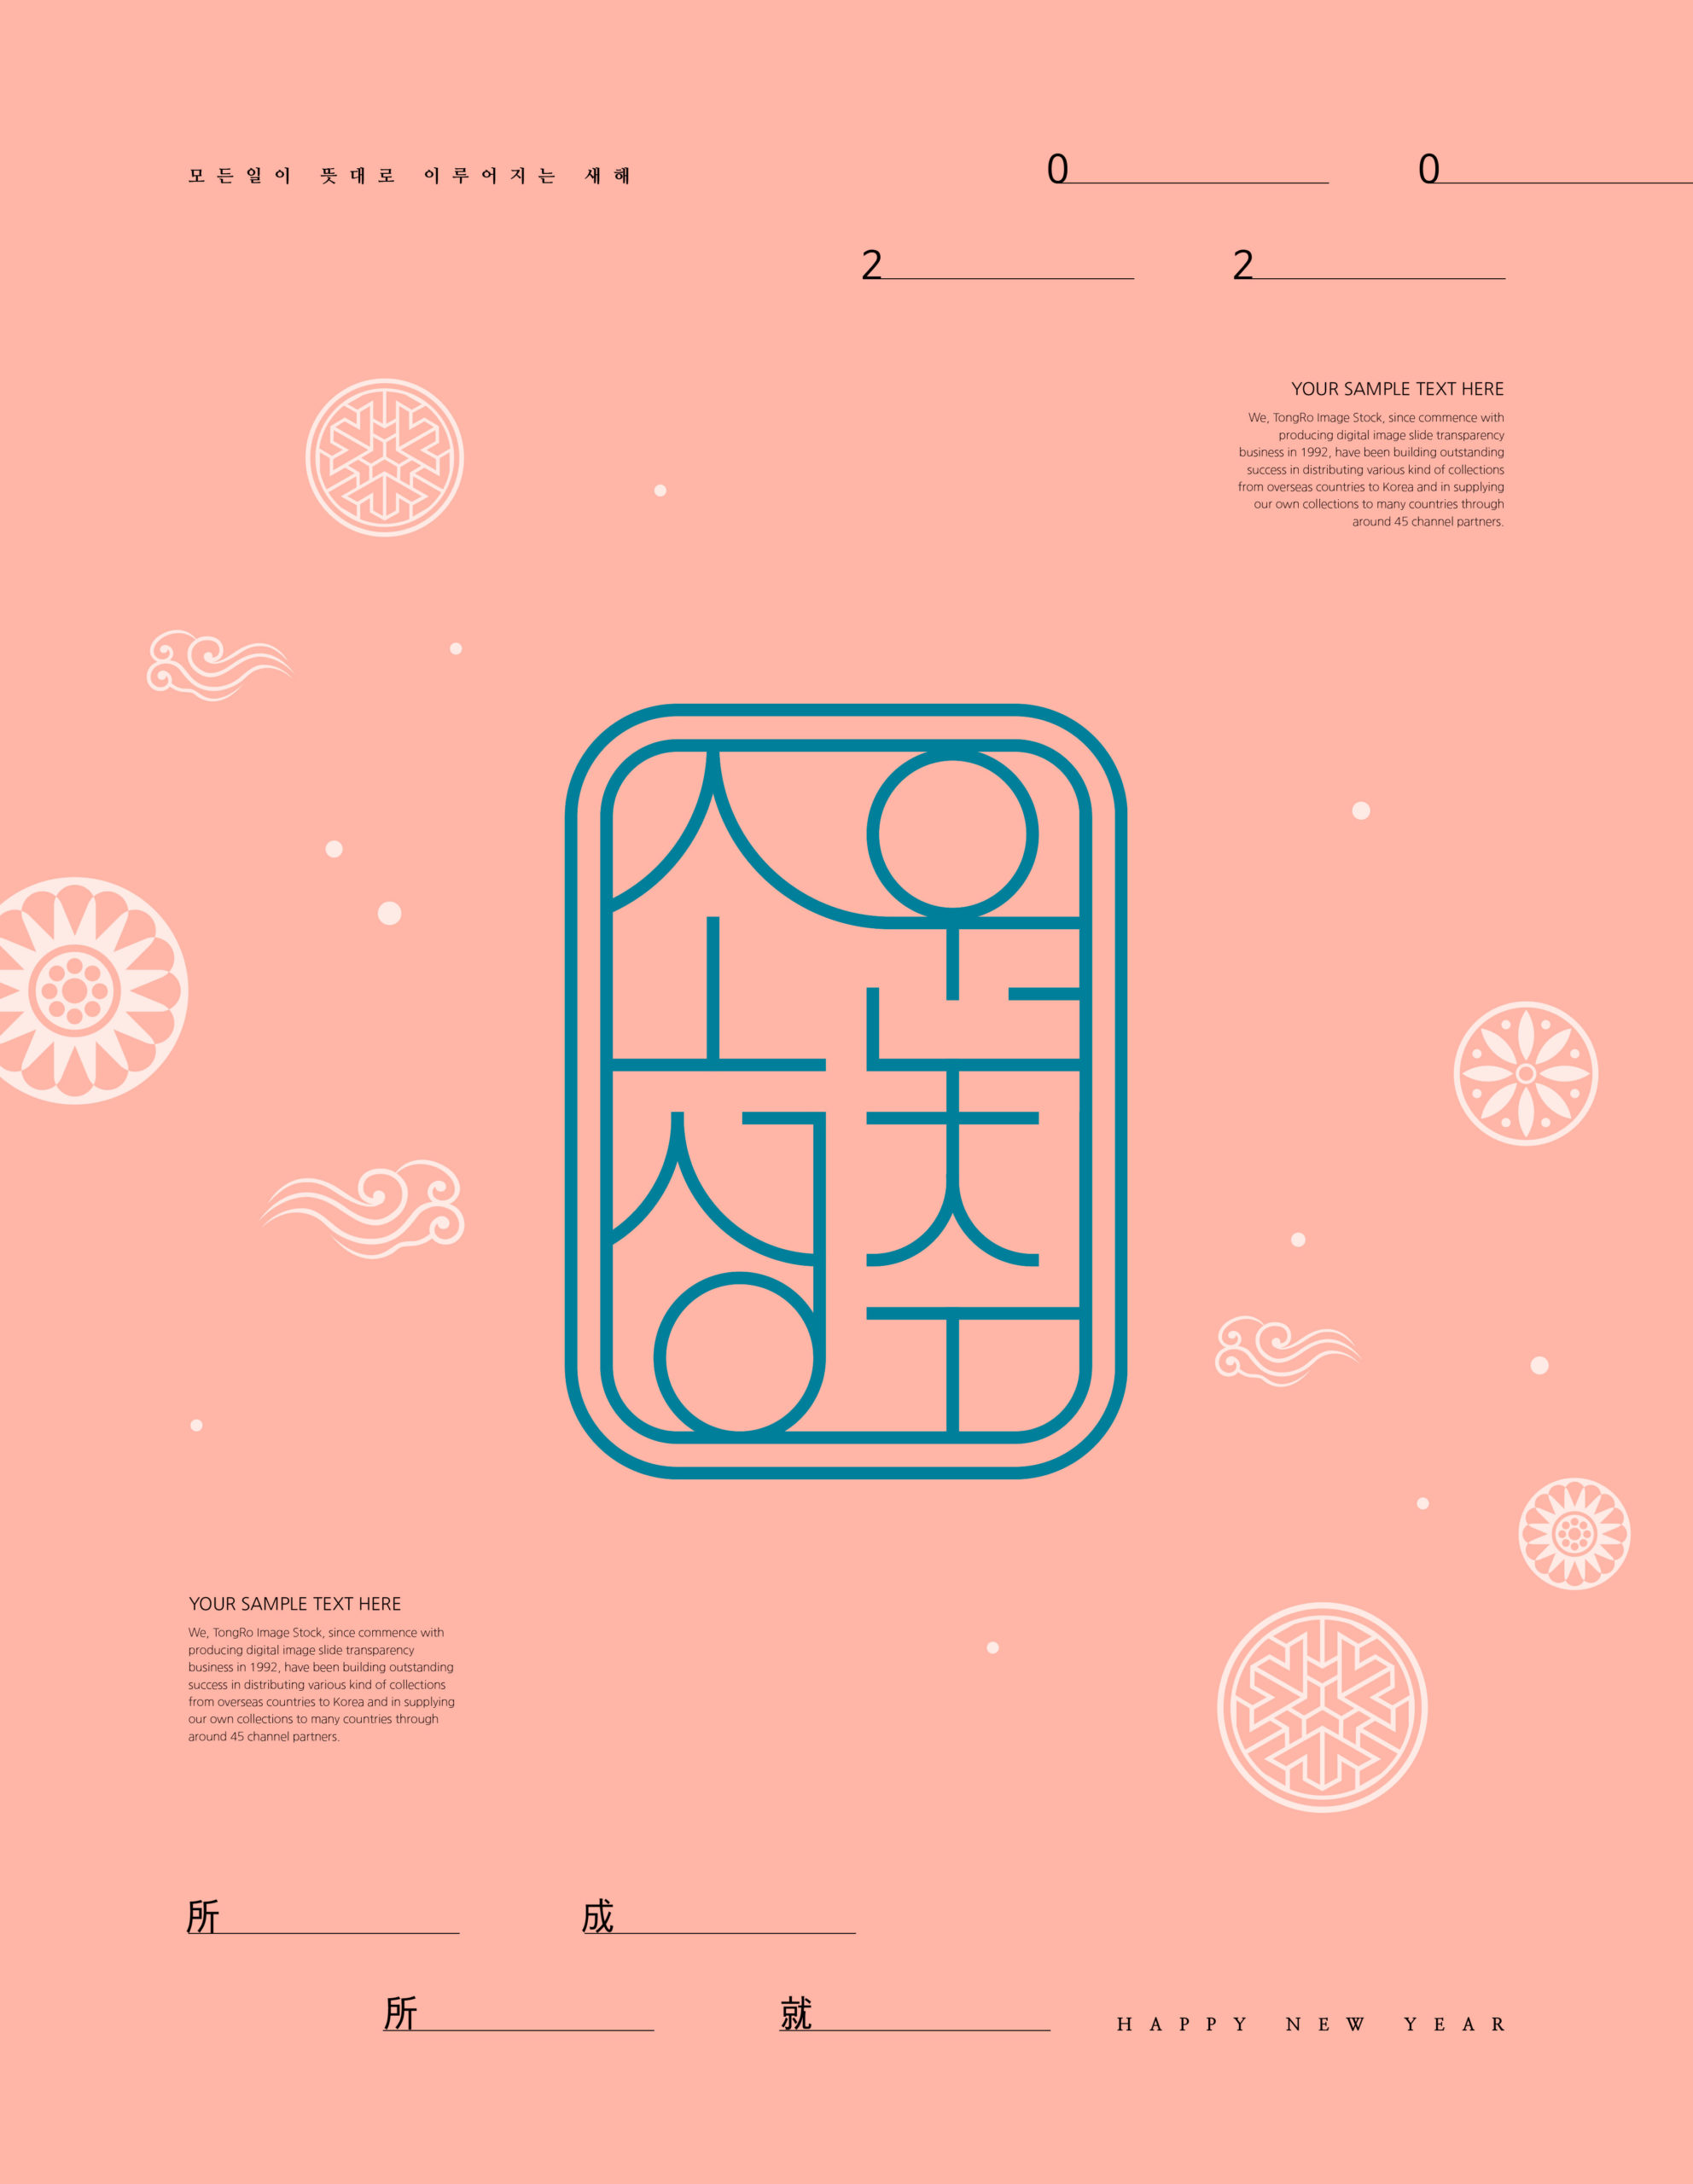 2020新年祝福主题韩国海报PSD素材第一素材精选插图